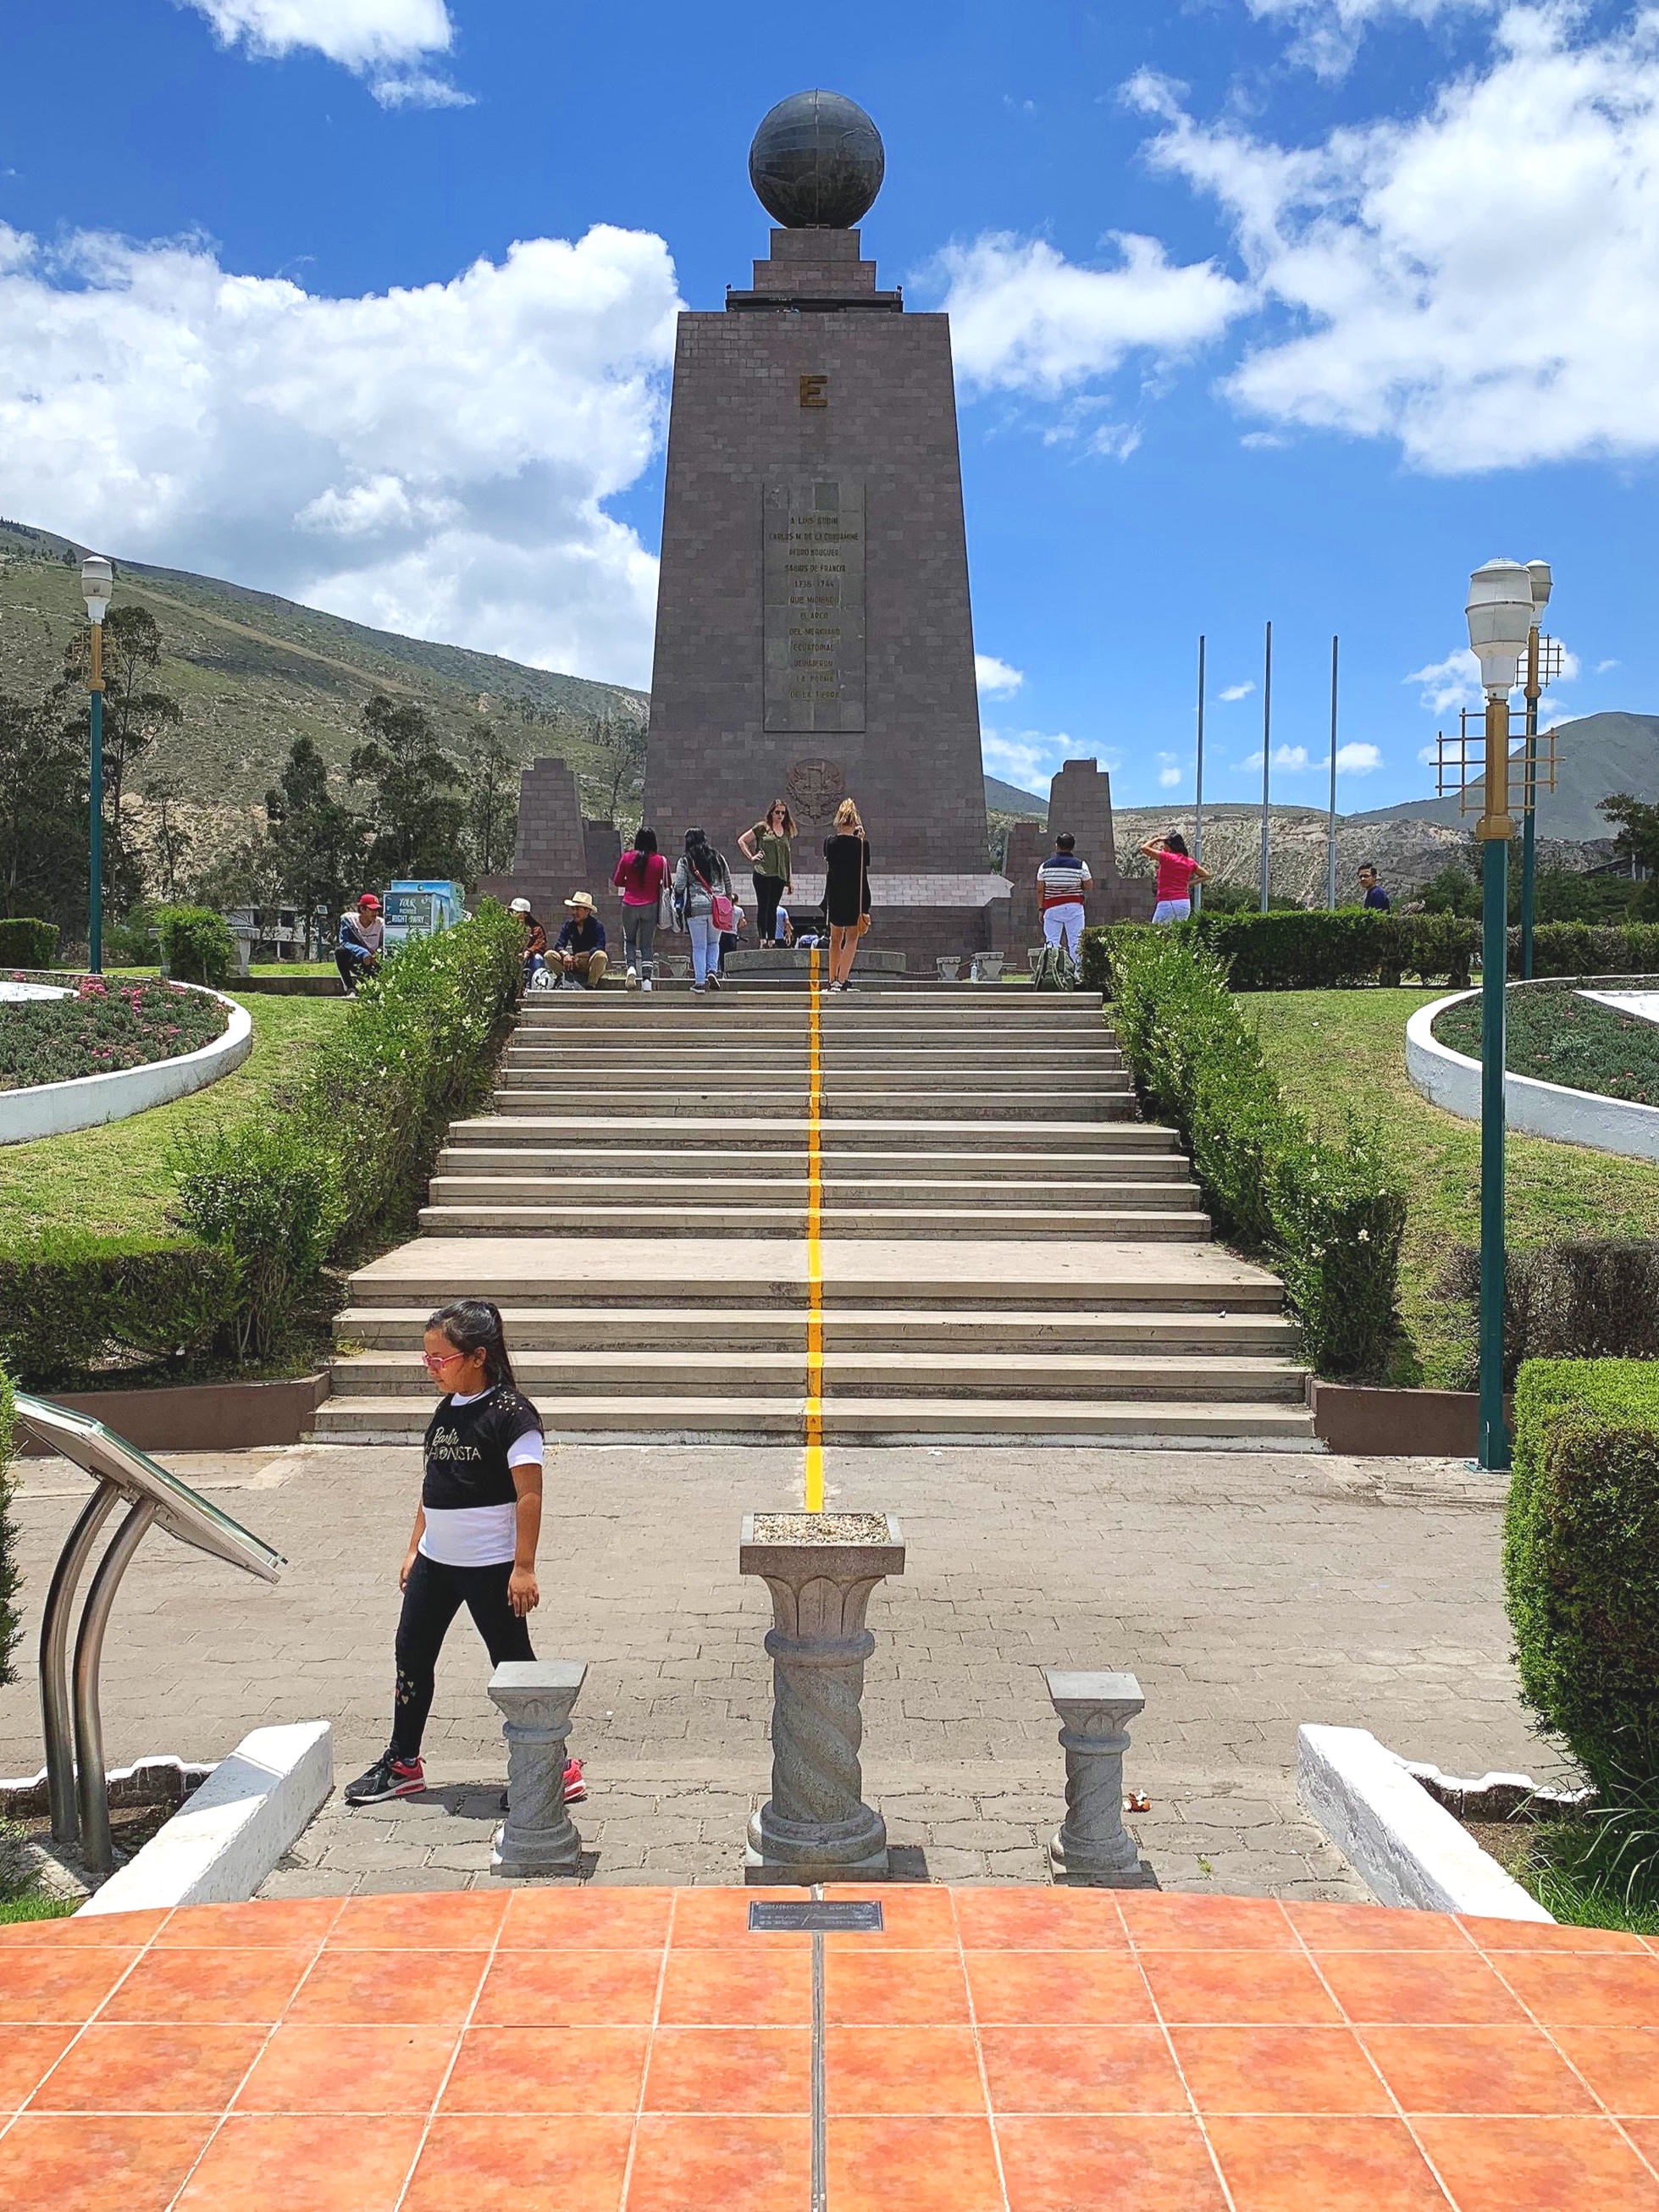 The original equator monument.